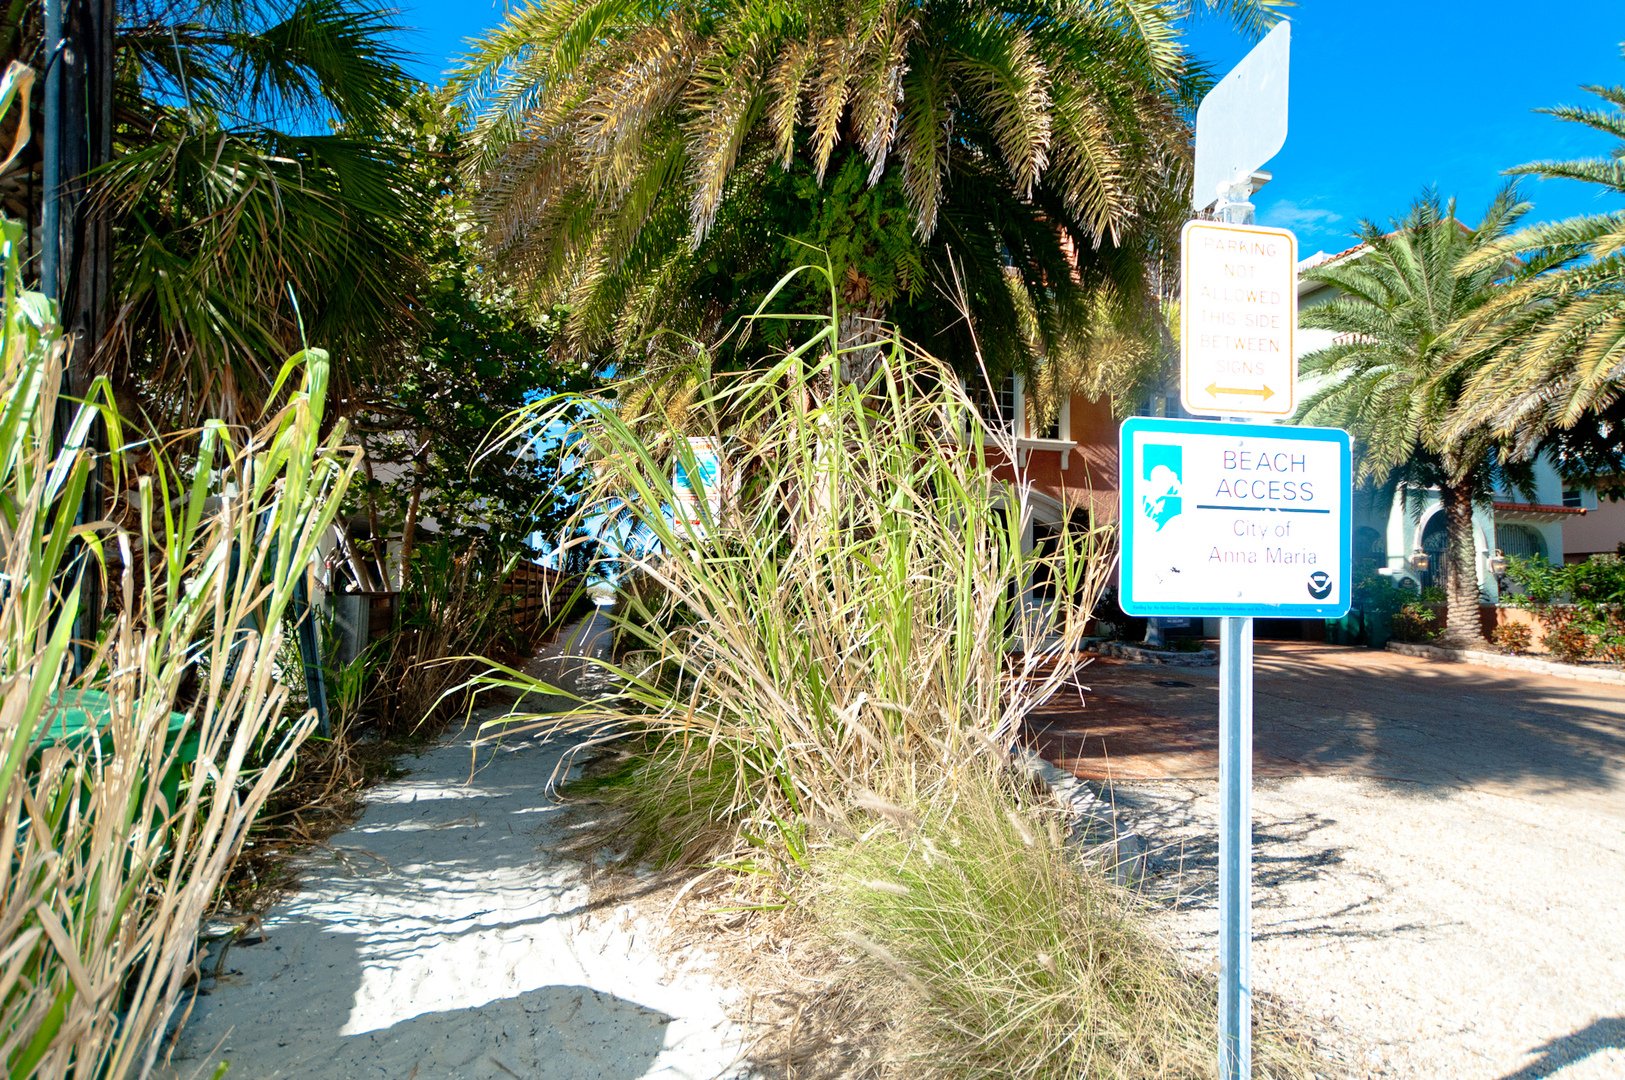 Anna Maria Island public beach access path